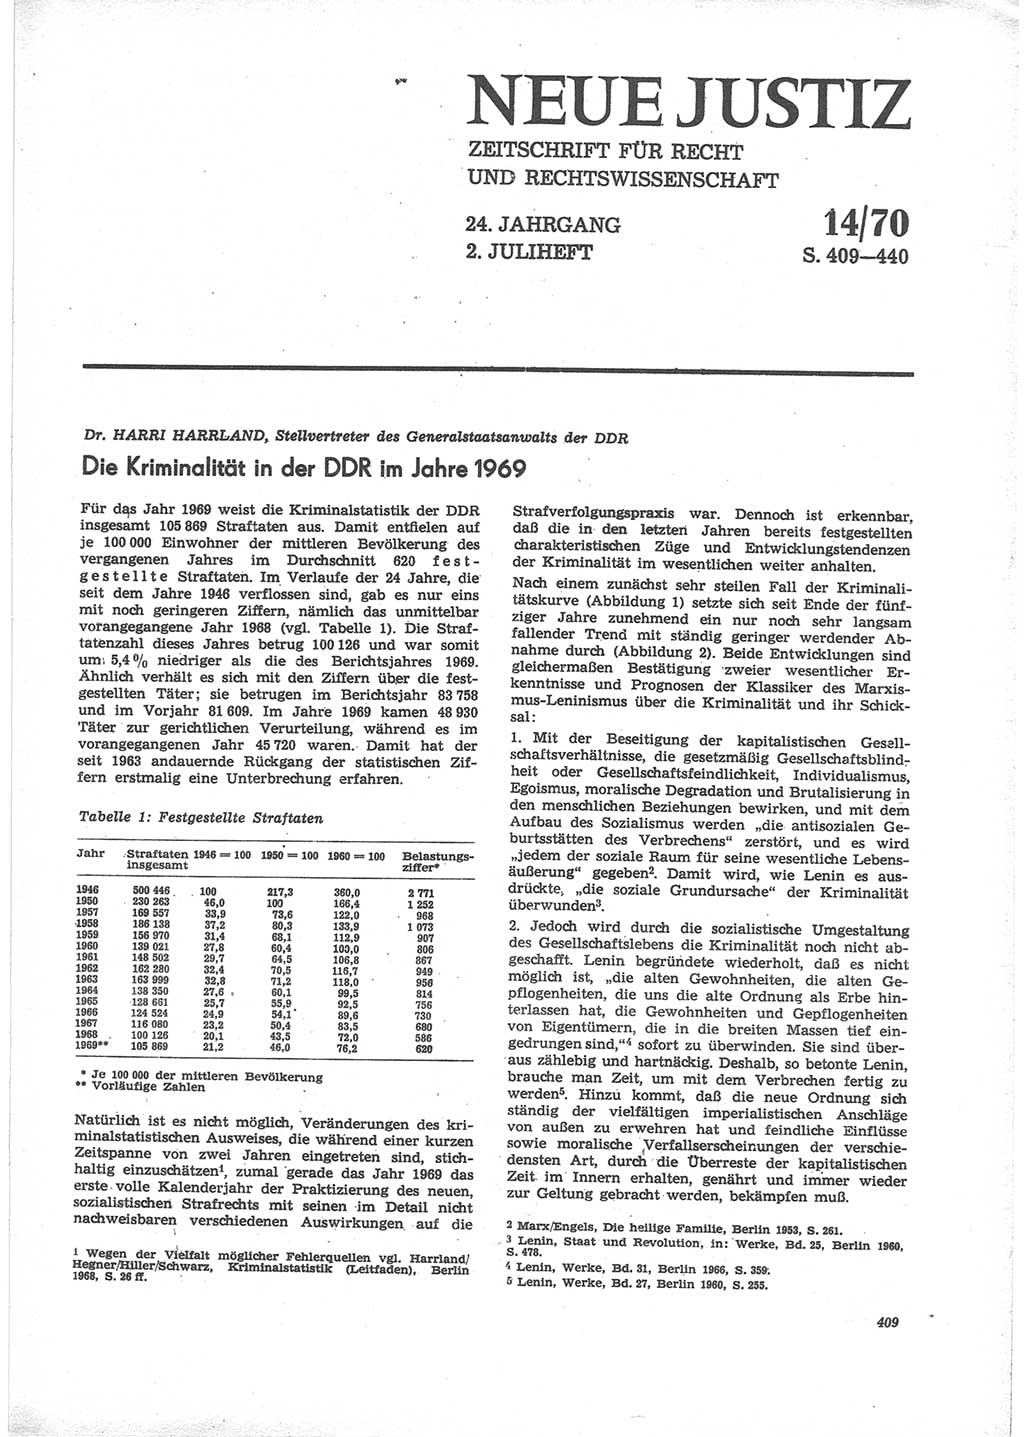 Neue Justiz (NJ), Zeitschrift für Recht und Rechtswissenschaft [Deutsche Demokratische Republik (DDR)], 24. Jahrgang 1970, Seite 409 (NJ DDR 1970, S. 409)